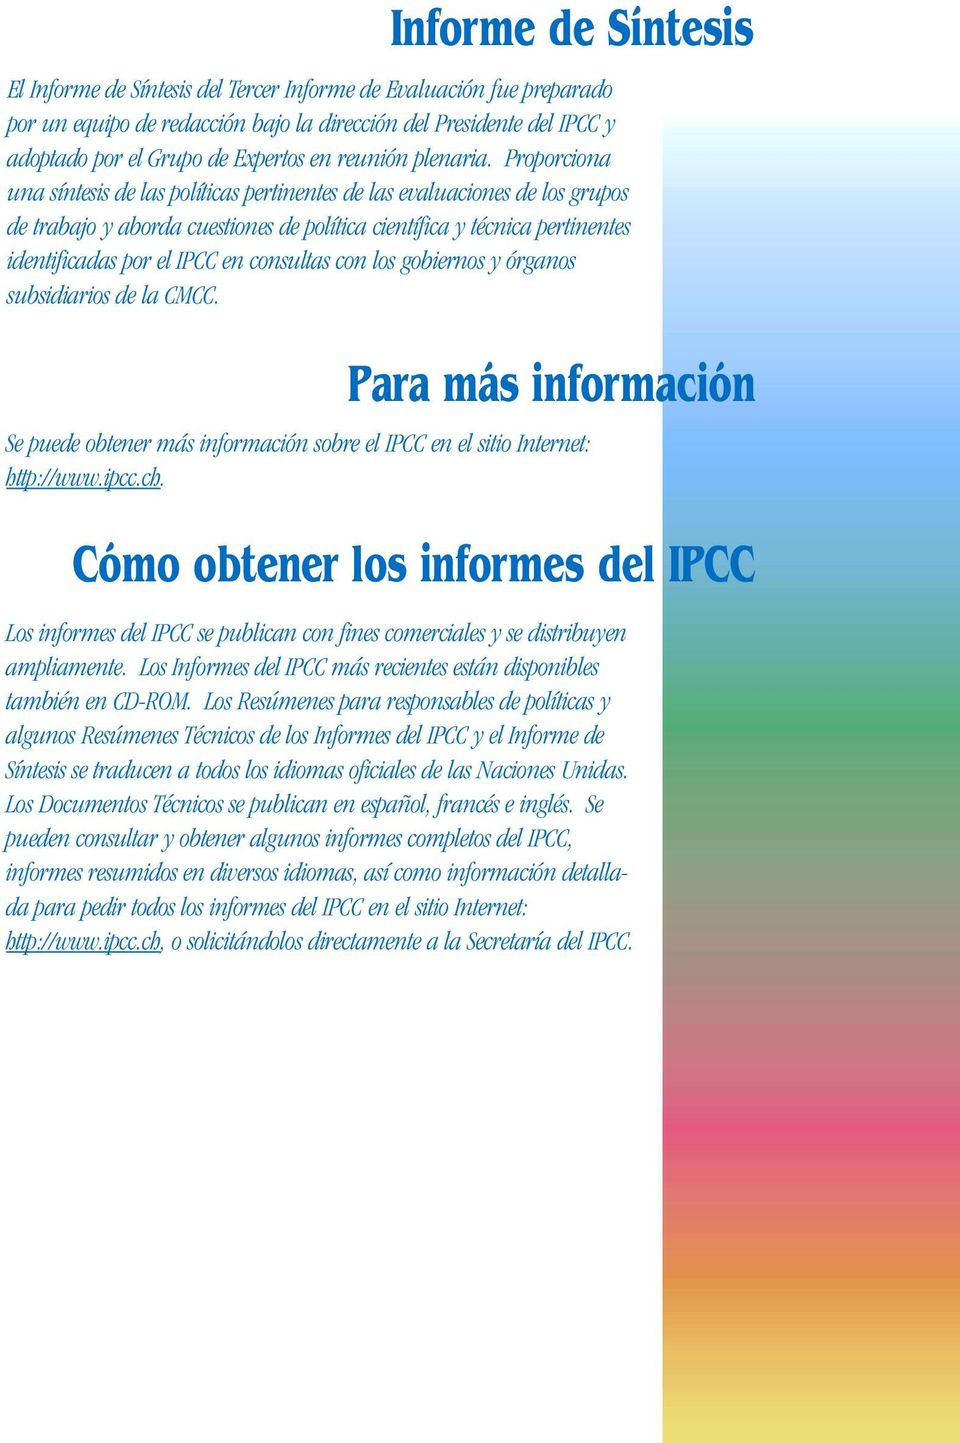 Proporciona una síntesis de las políticas pertinentes de las evaluaciones de los grupos de trabajo y aborda cuestiones de política científica y técnica pertinentes identificadas por el IPCC en